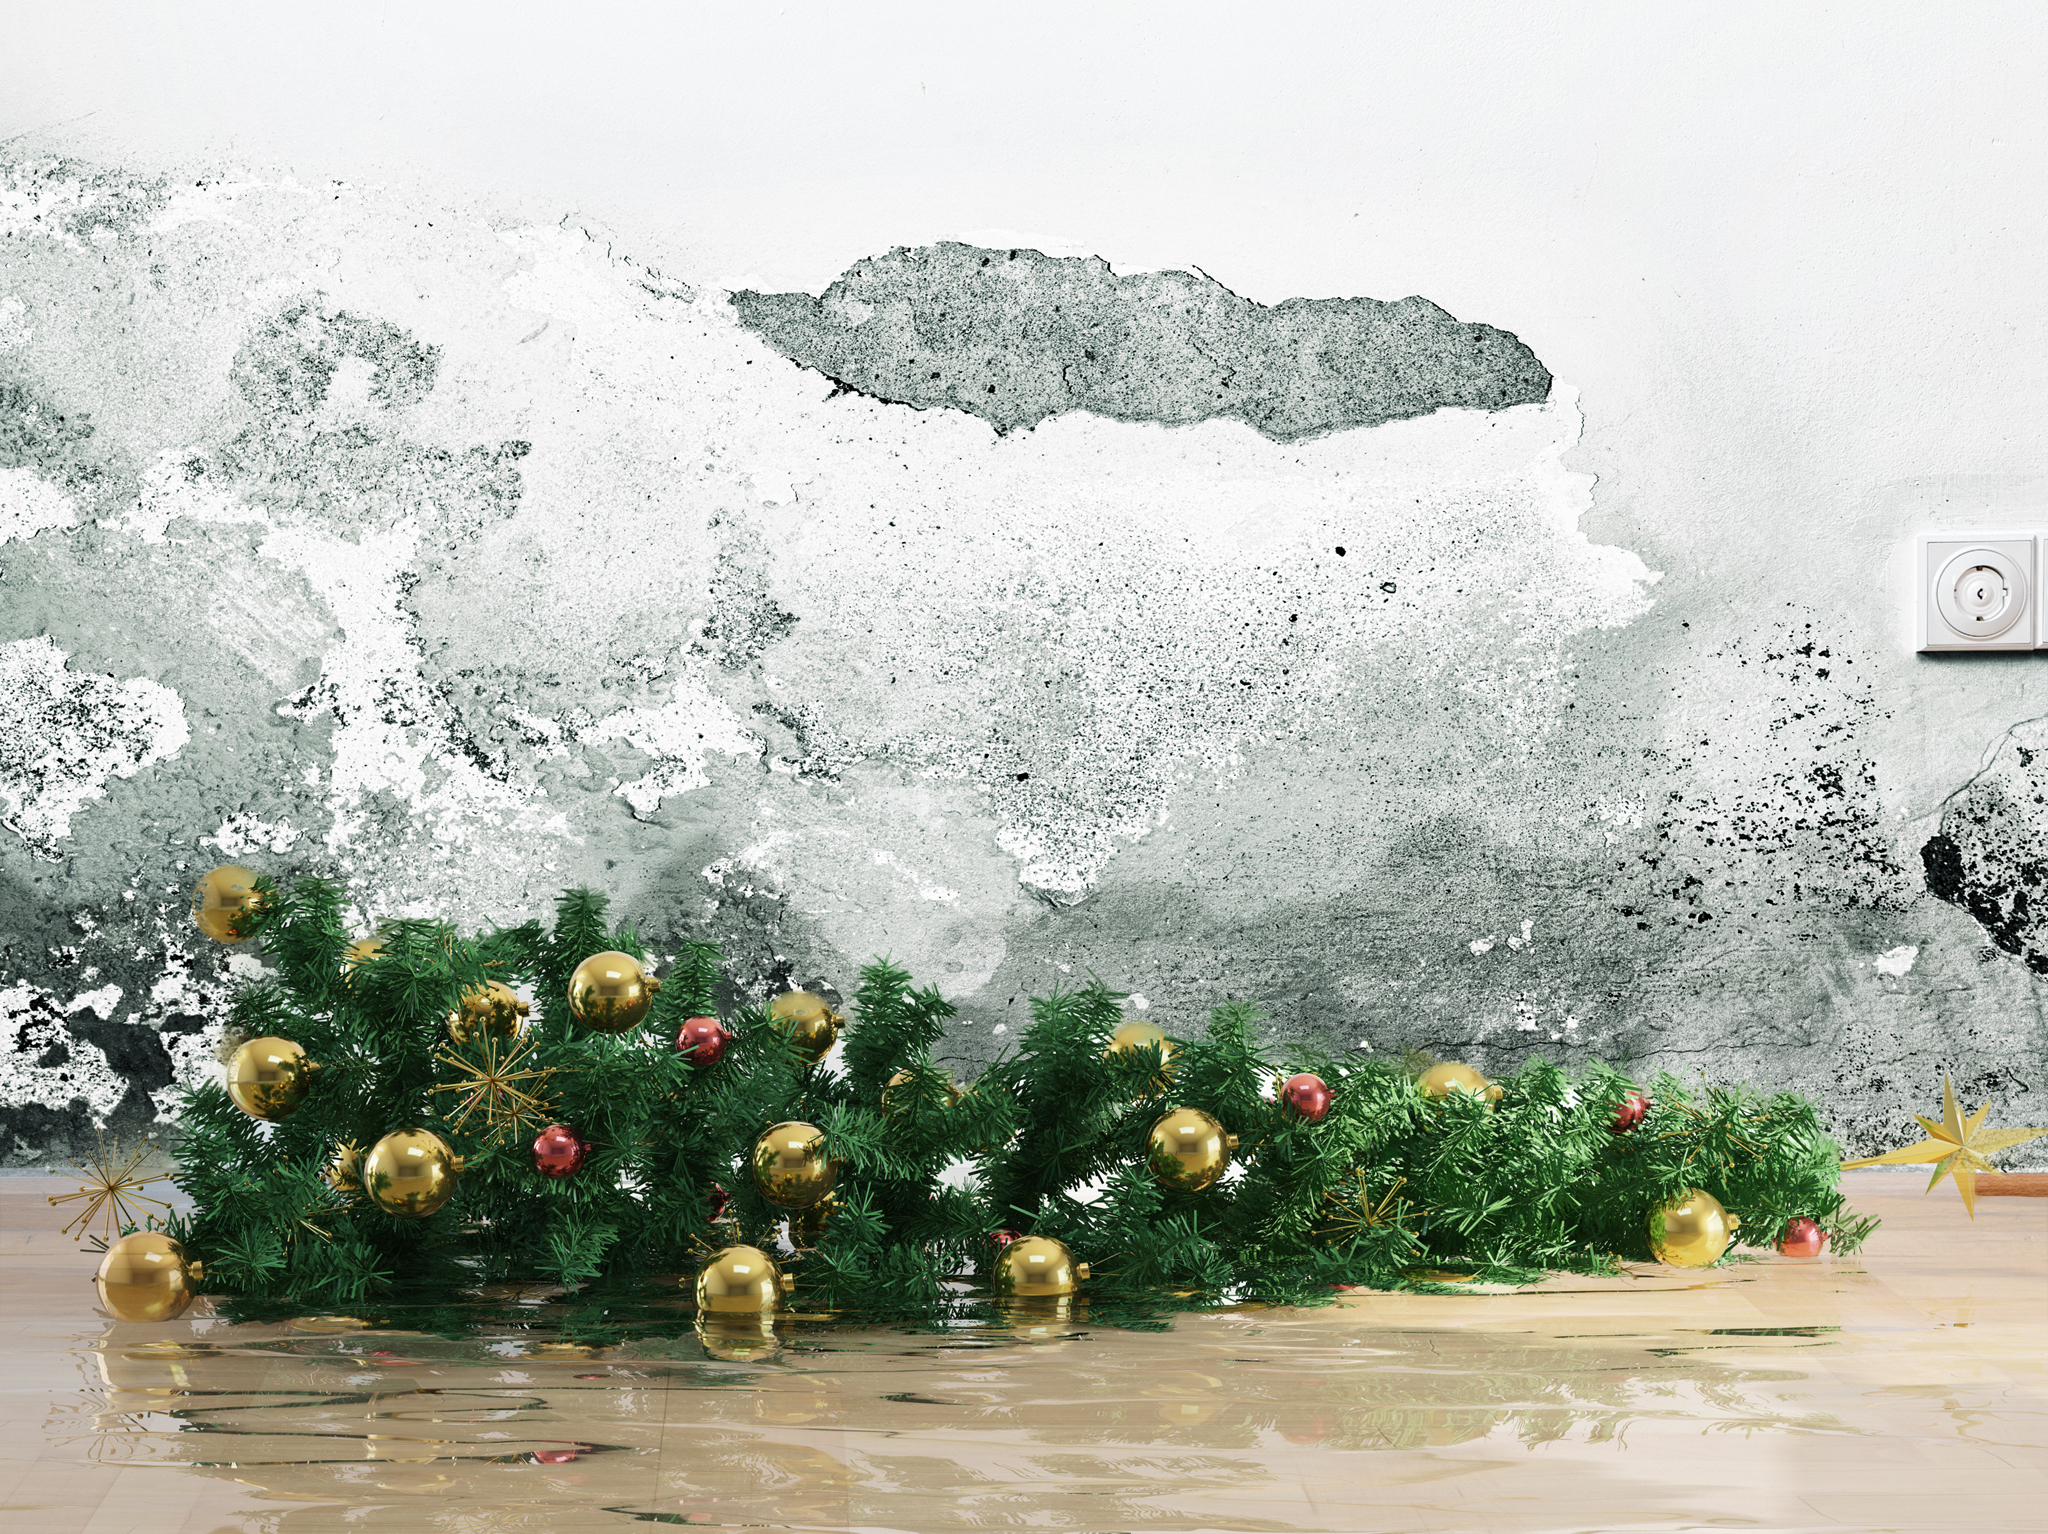 Mold and Christmas tree